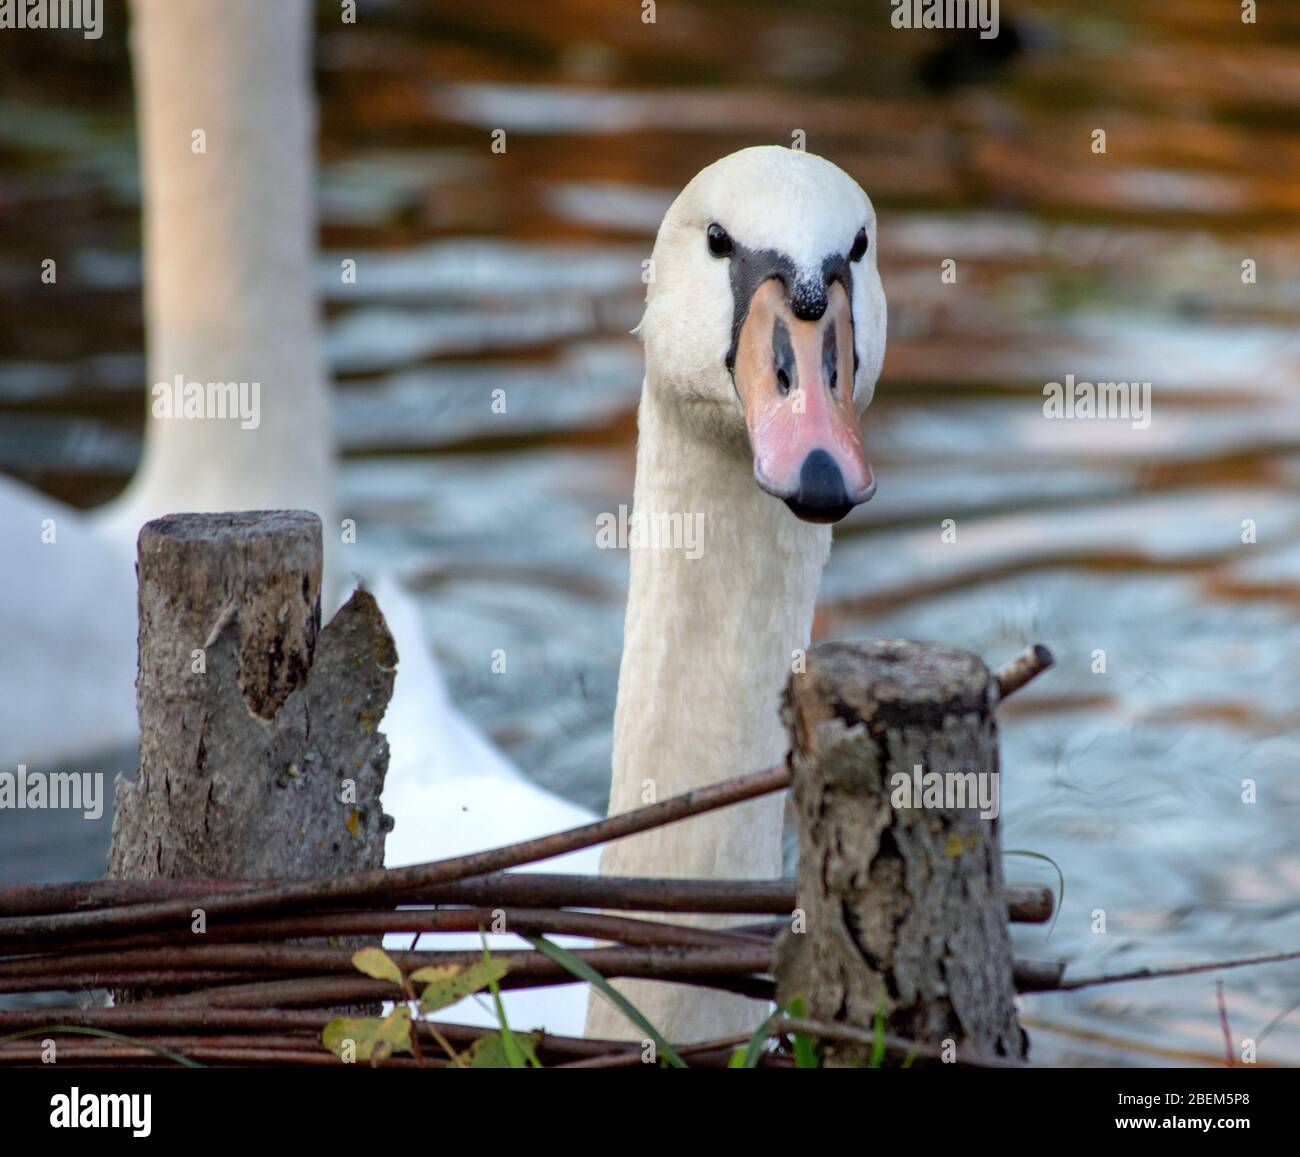 Un colpo da vicino di una testa di cigni che guarda su alcuni rami, un bel cigno che nuotano su un lago o stagno in posa per un ritratto, cigno bianco sono incredibili Foto Stock